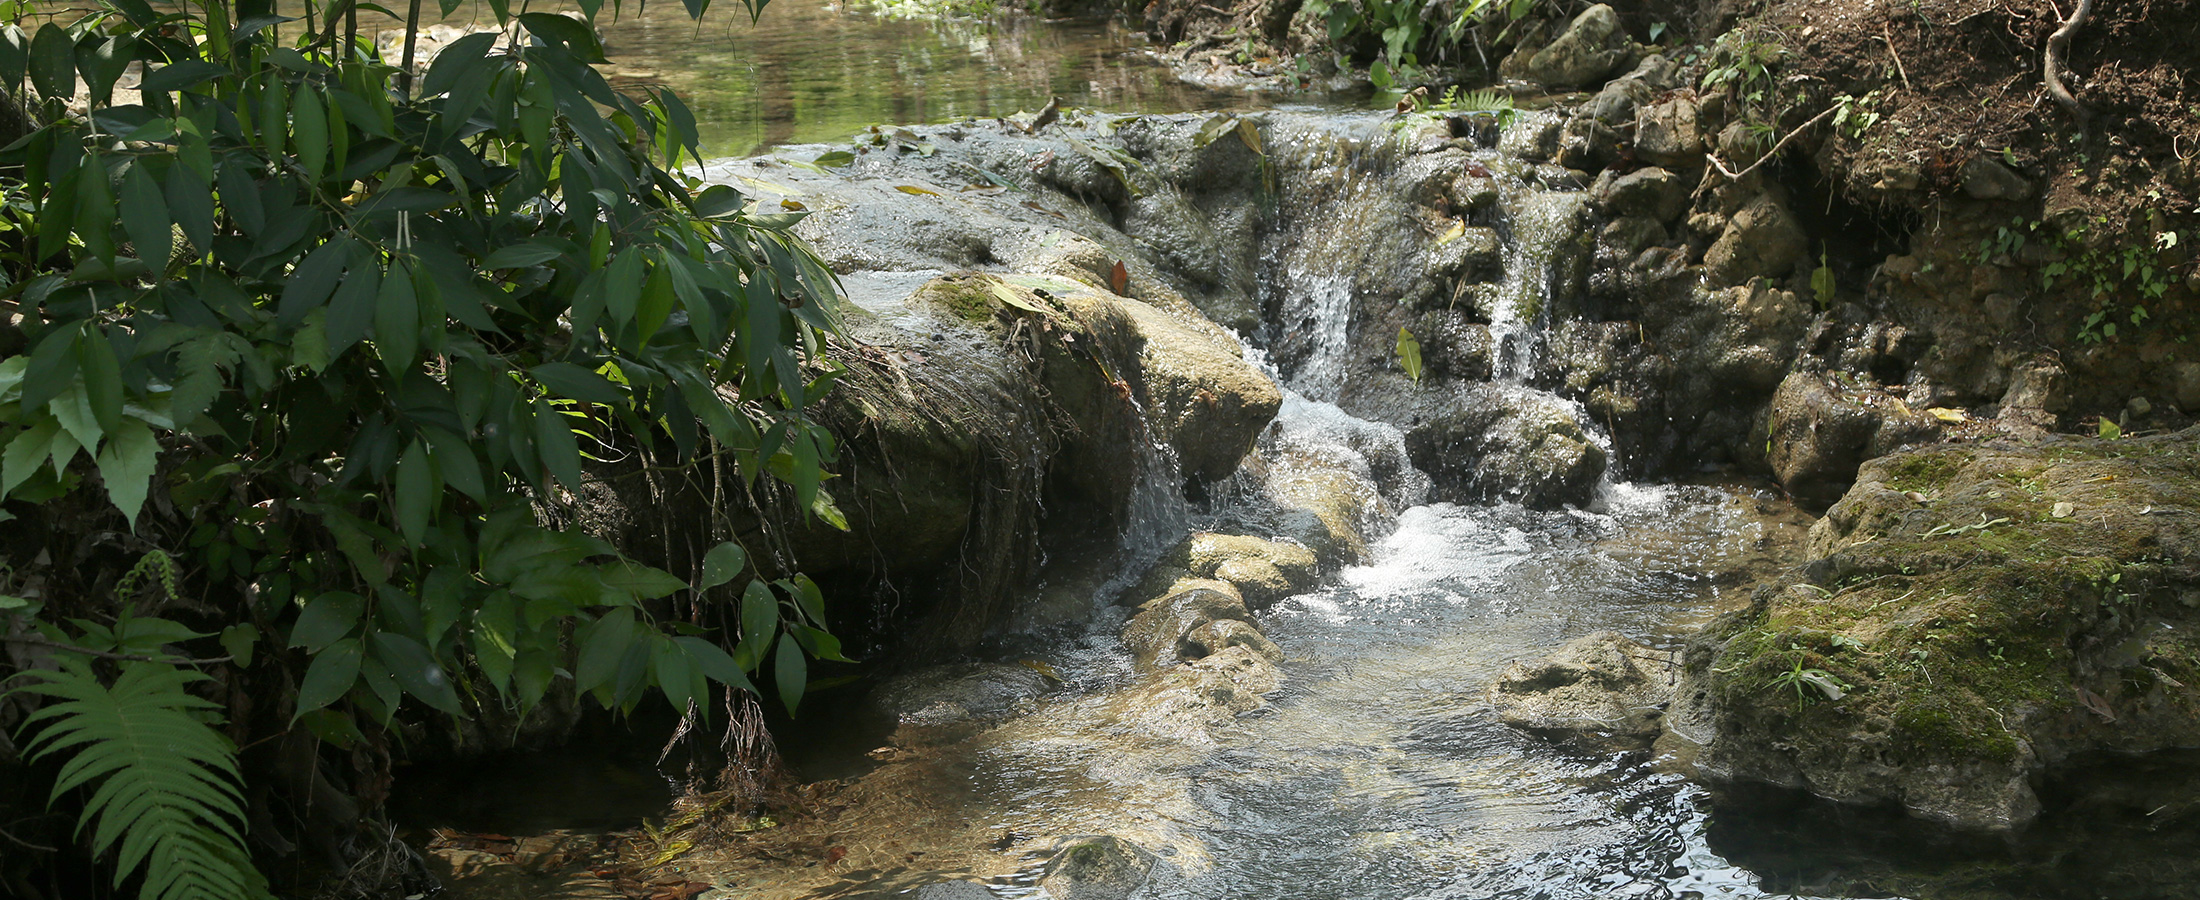 Winika Habitat es ideal para el turismo de aventura en Palenque